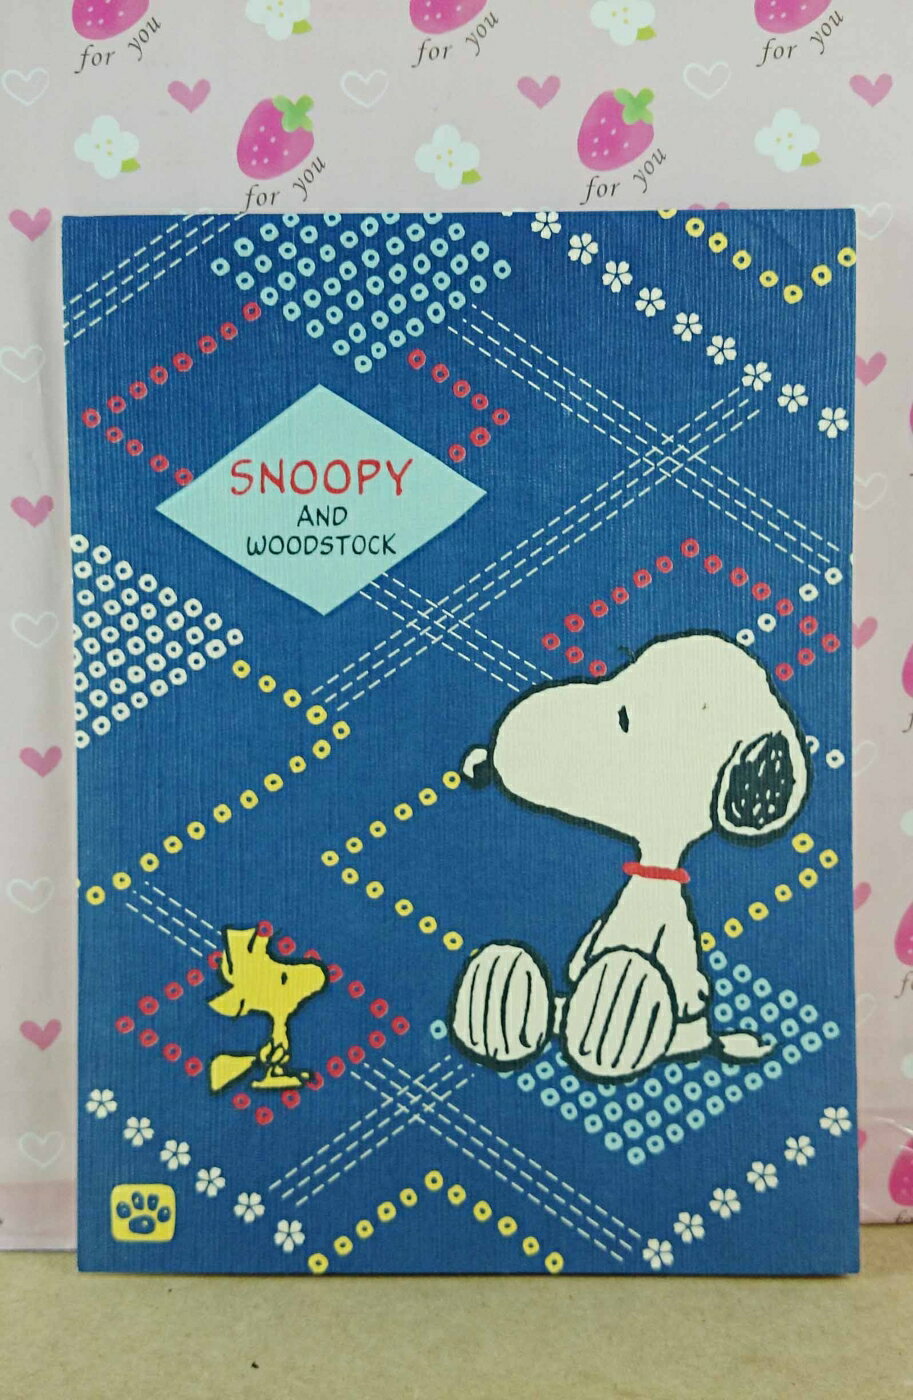 【震撼精品百貨】史奴比Peanuts Snoopy 便條本 藍 和風 震撼日式精品百貨